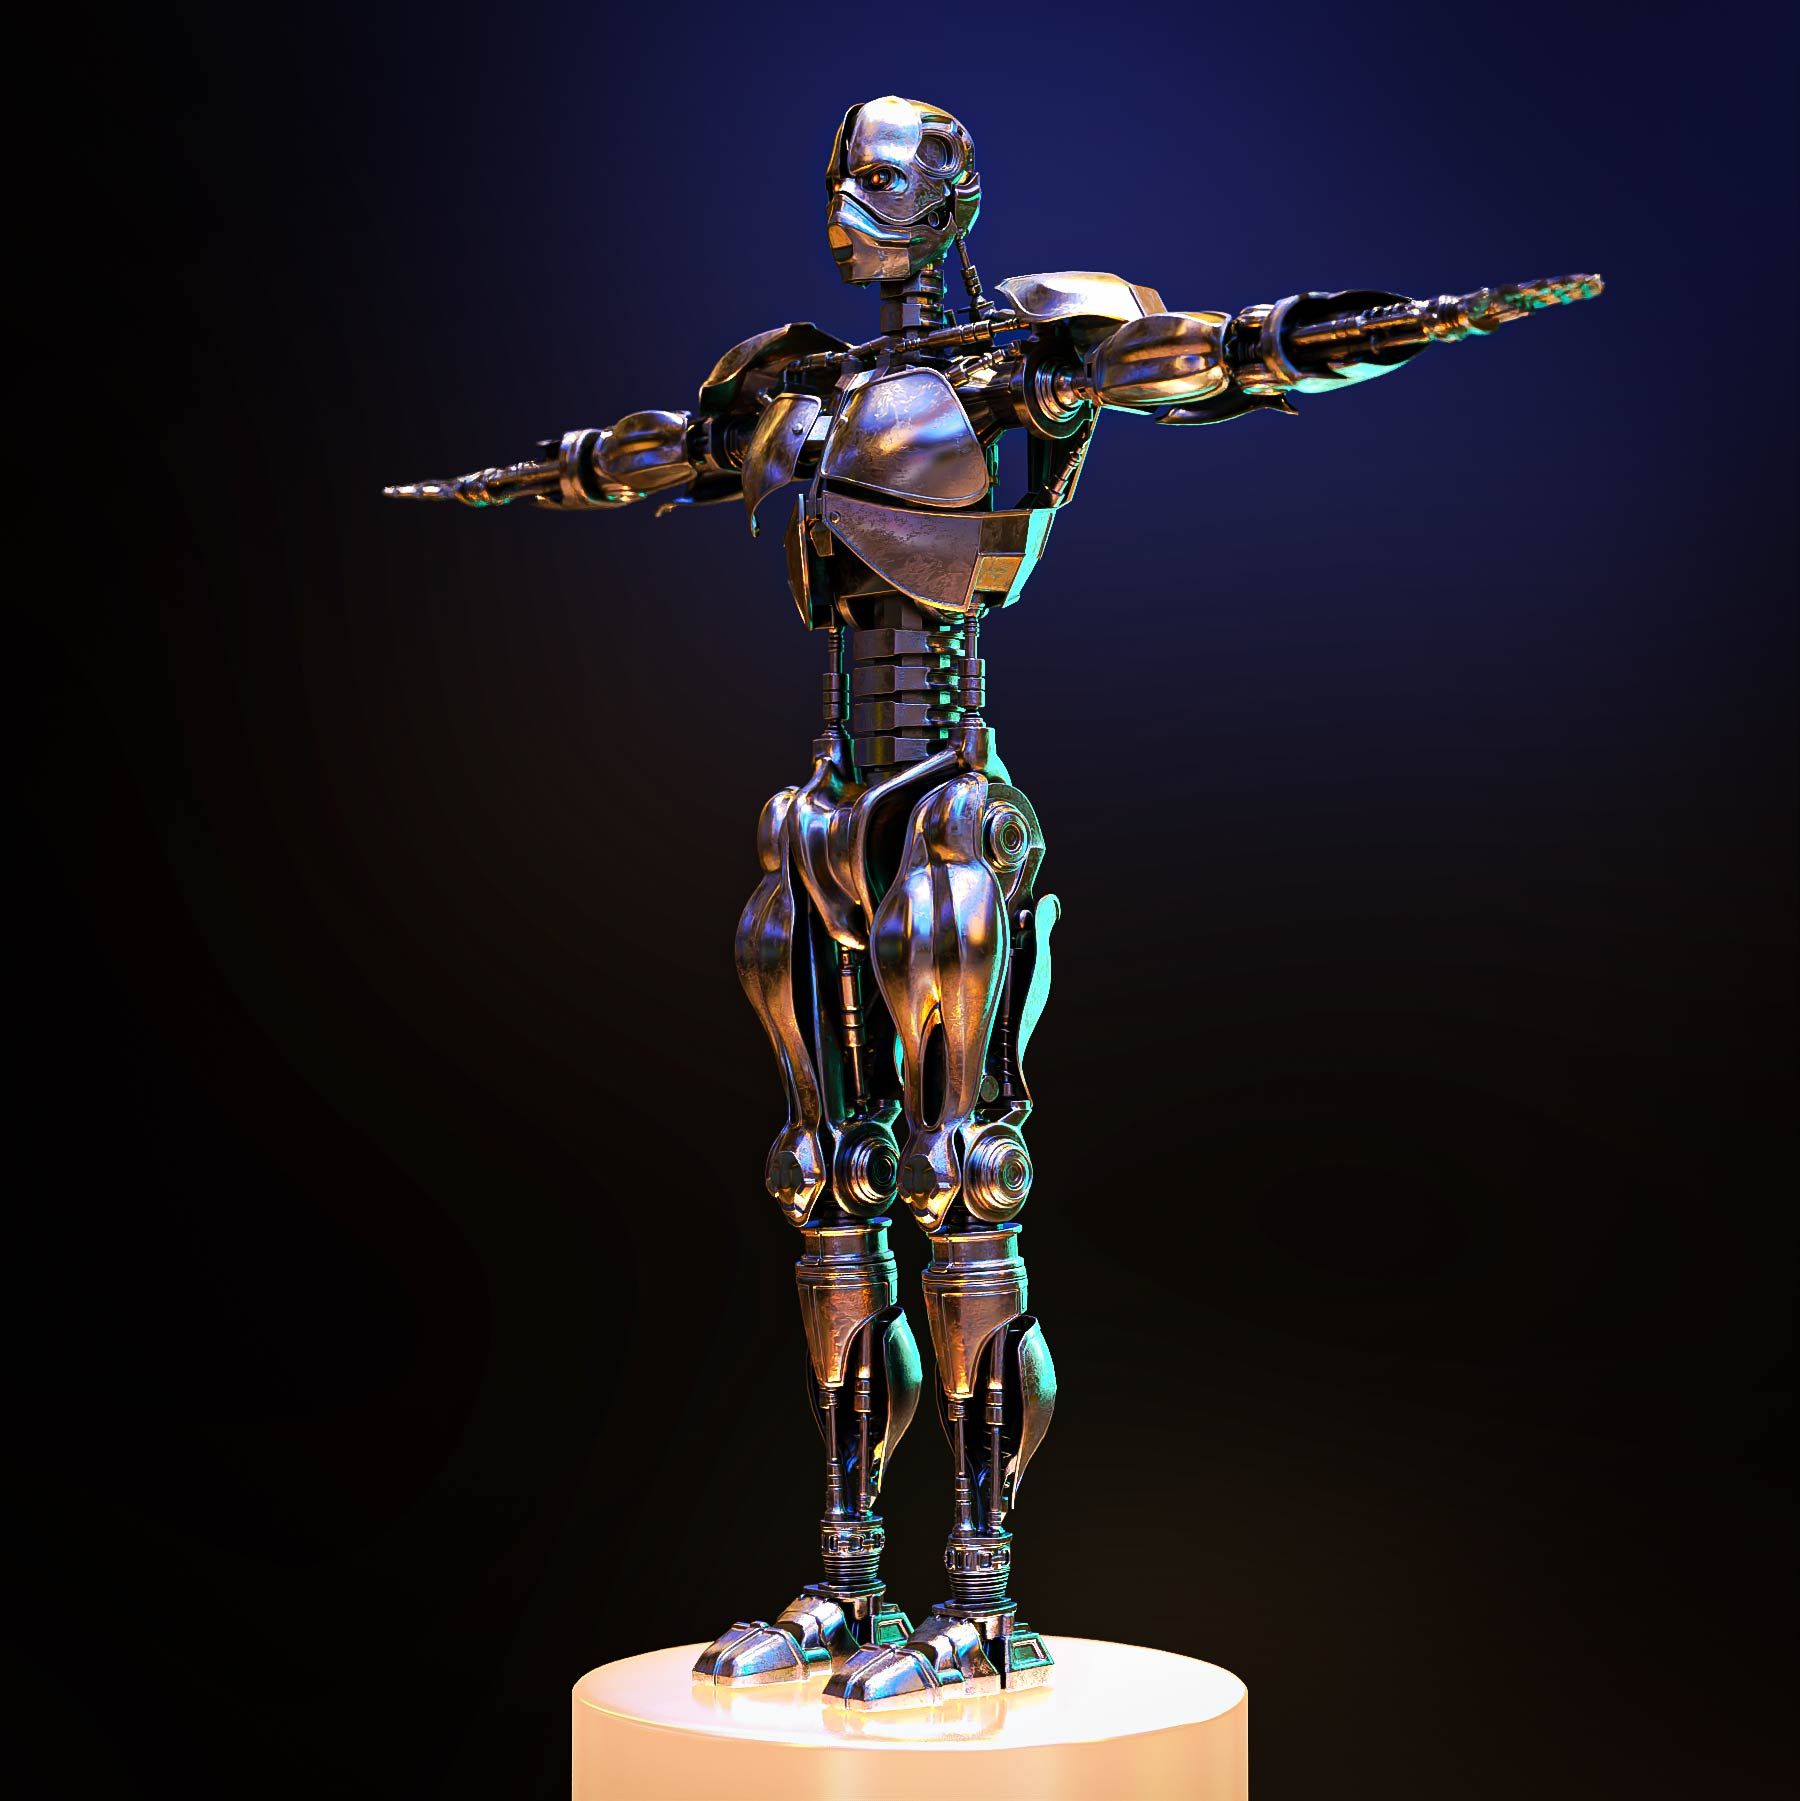 Collector's-Item-Rigged-Terminator-3D-Model---Sci-Fi-Fan-Favorite-Robotics